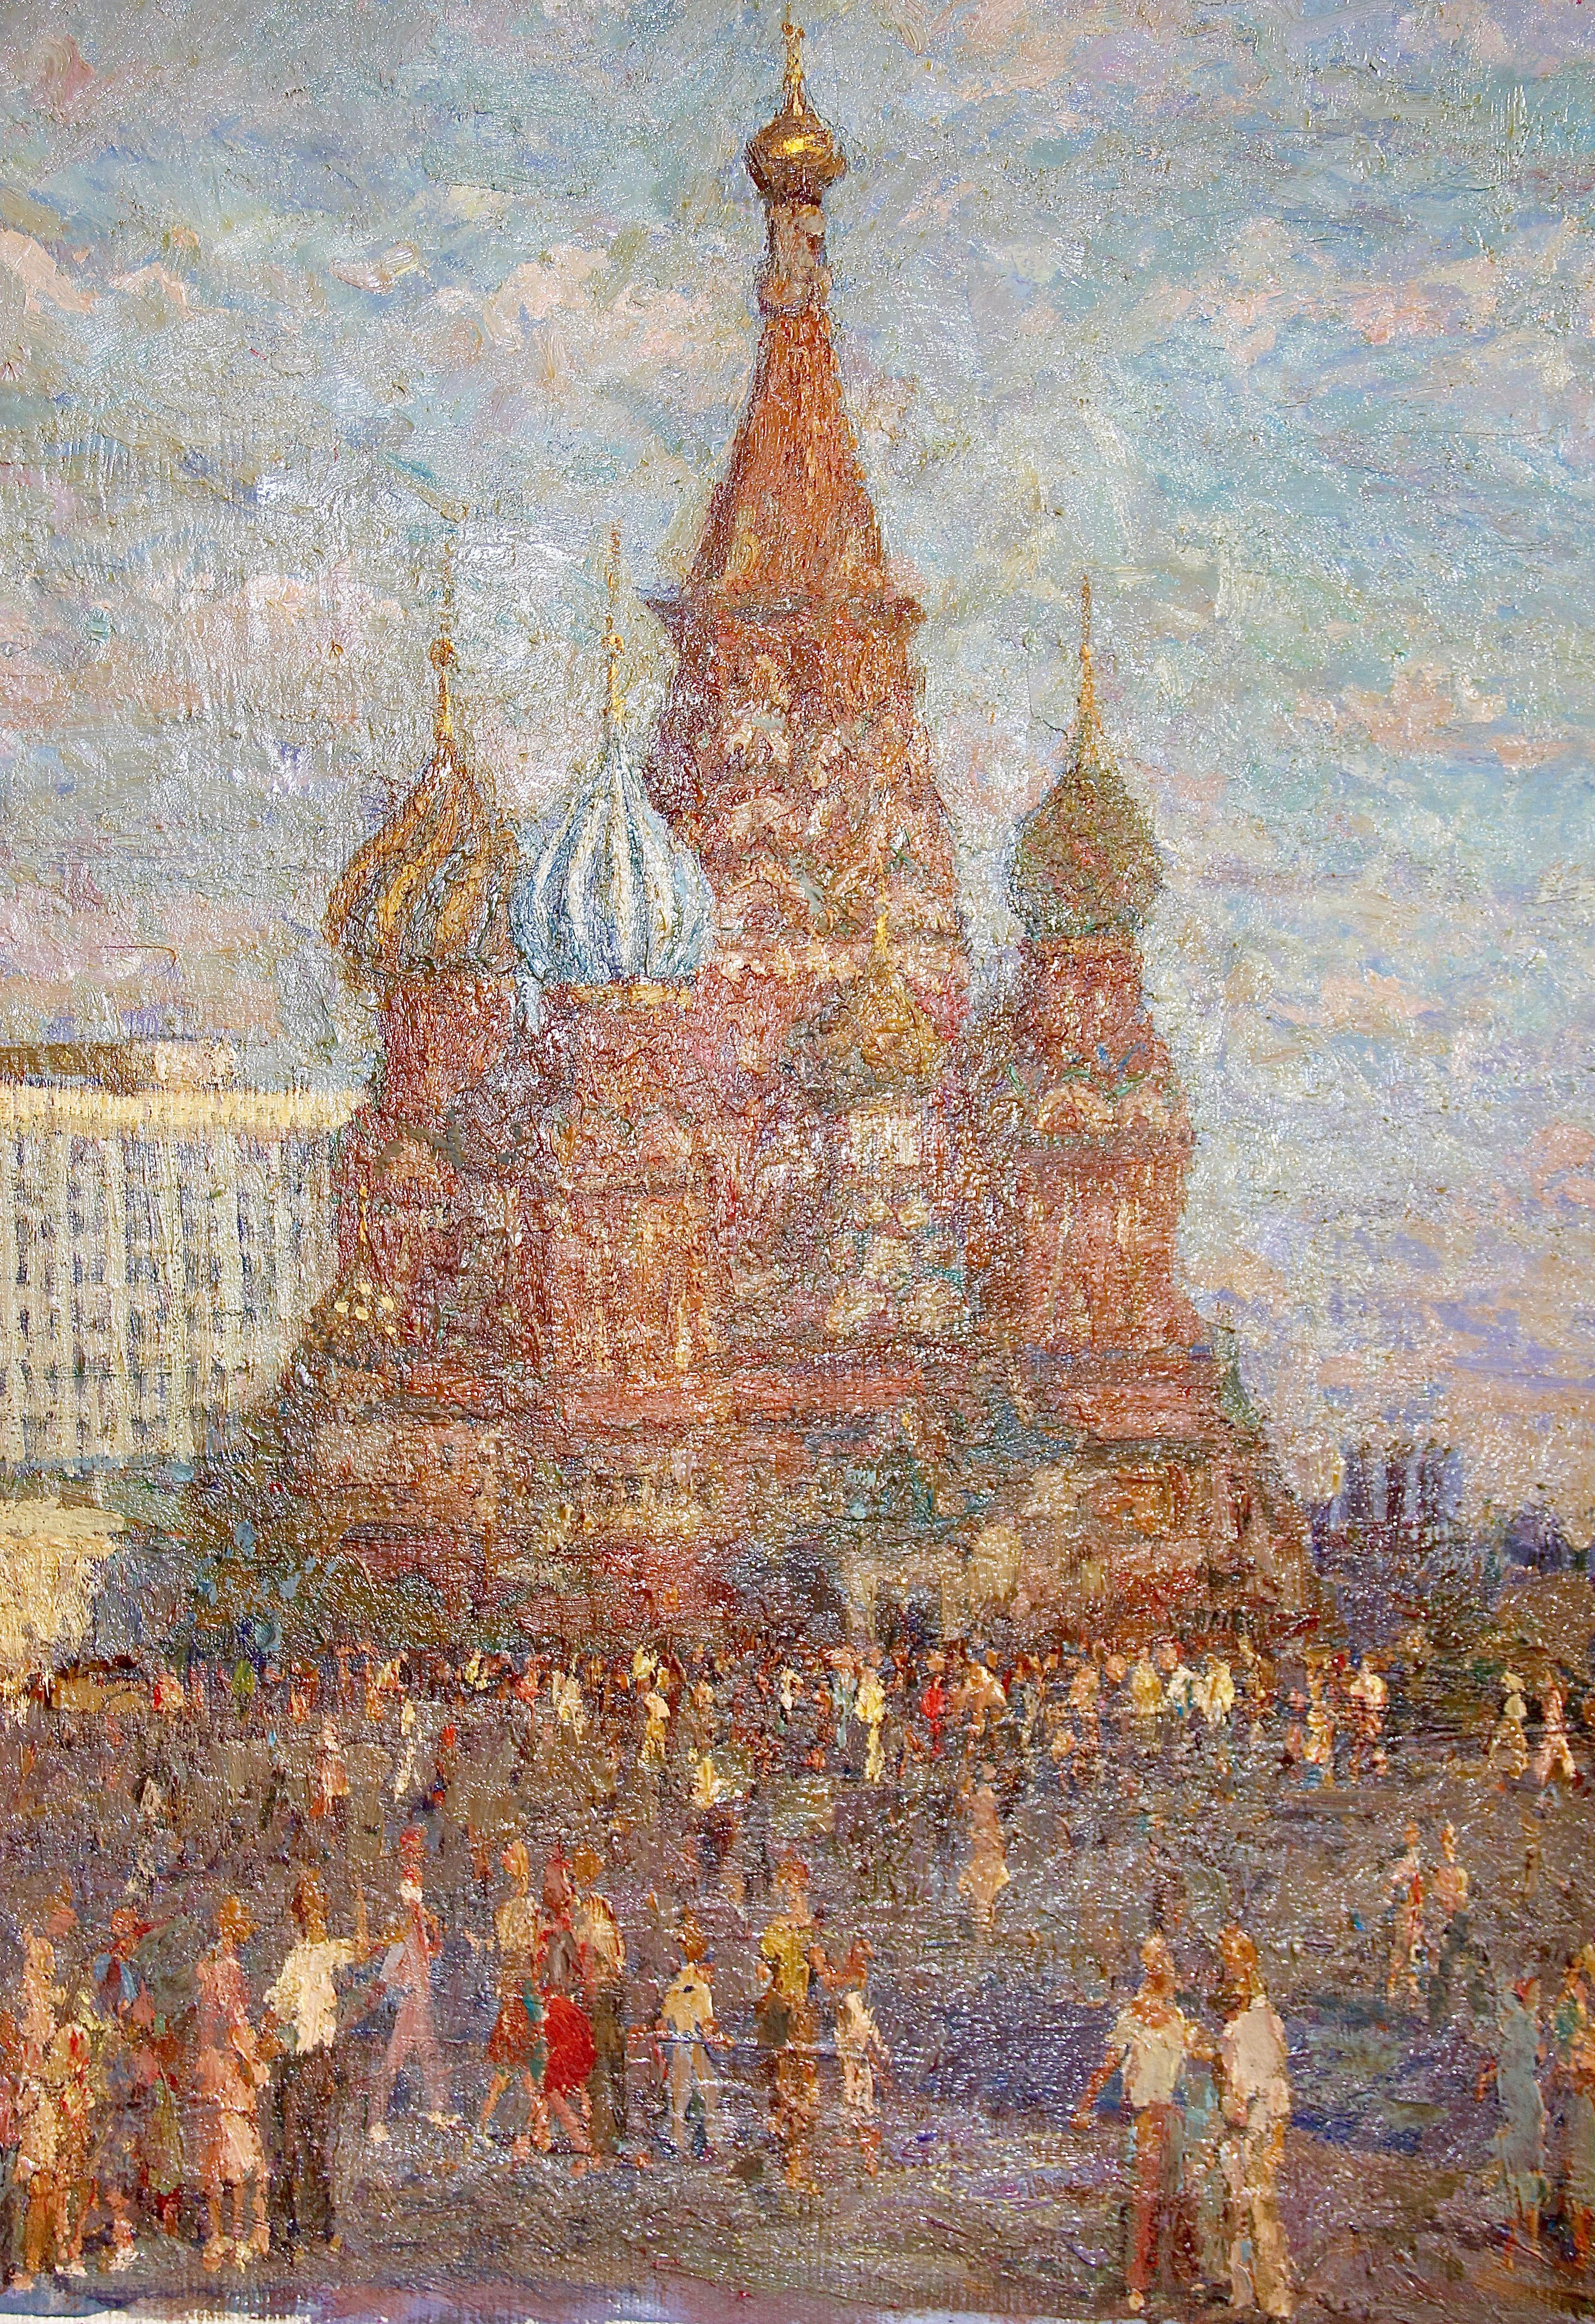 On the Red Square, Kremlin, Moscou - Peinture réaliste, paysage, 20e siècle - Réalisme Painting par Solovykh Gennady Ivanovich